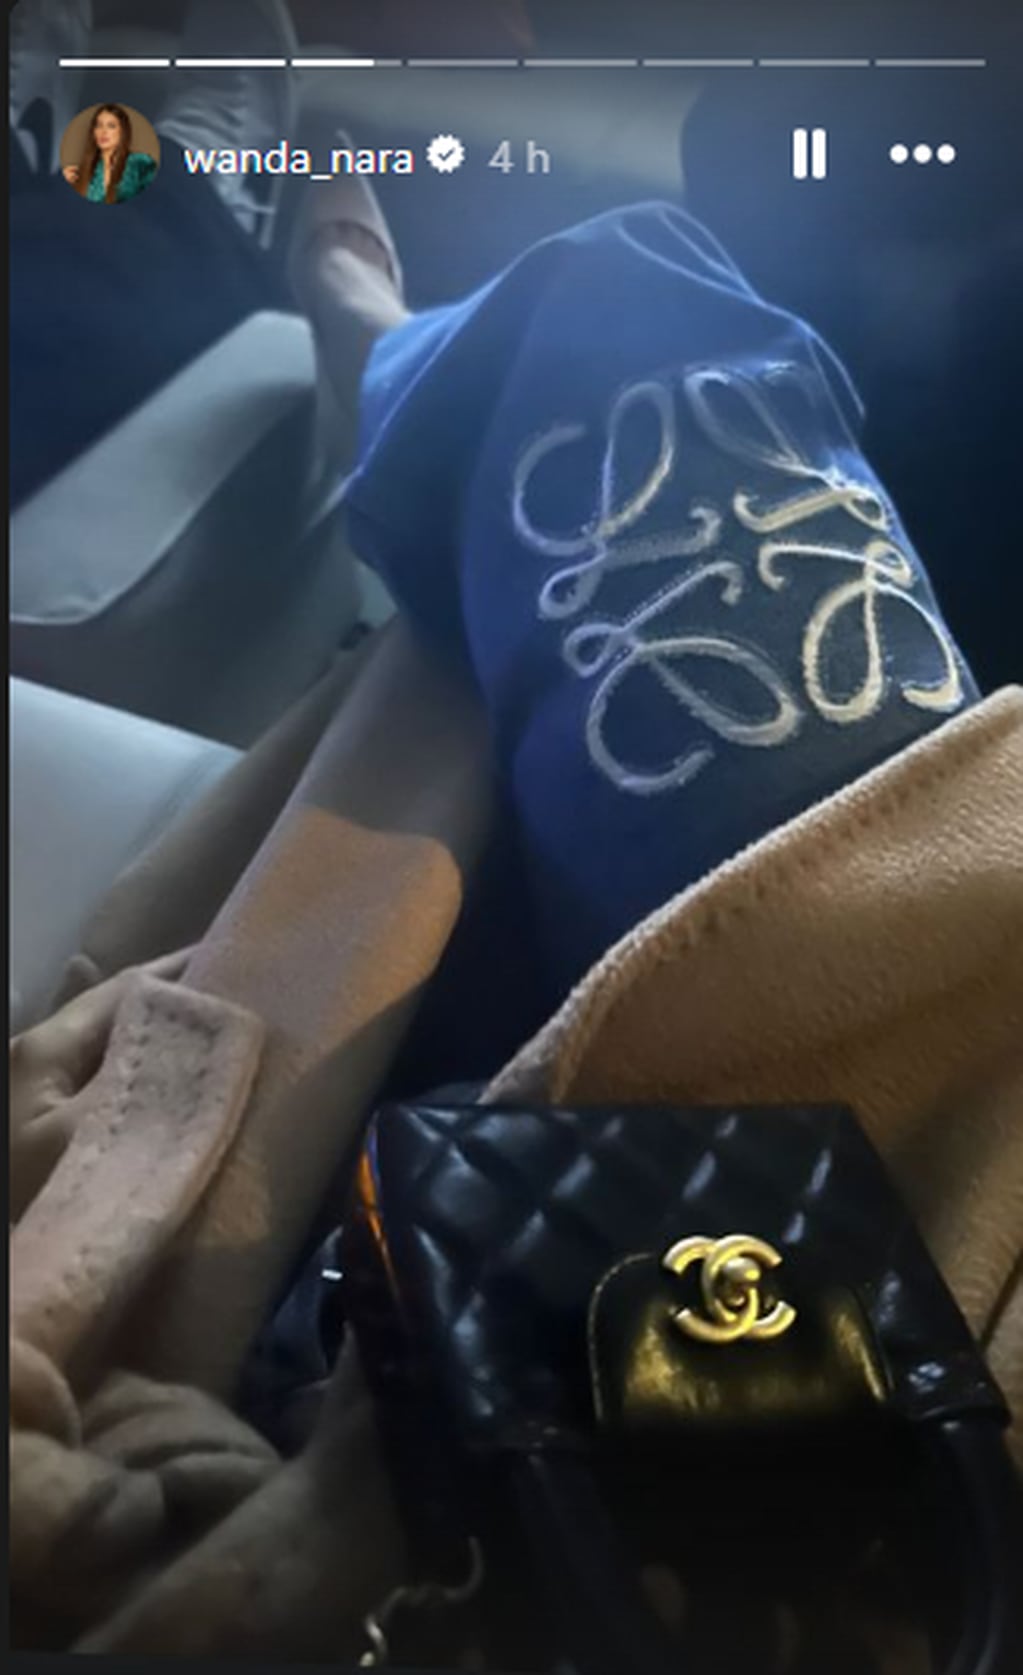 El pequeño bolso Chanel de Wanda Nara.